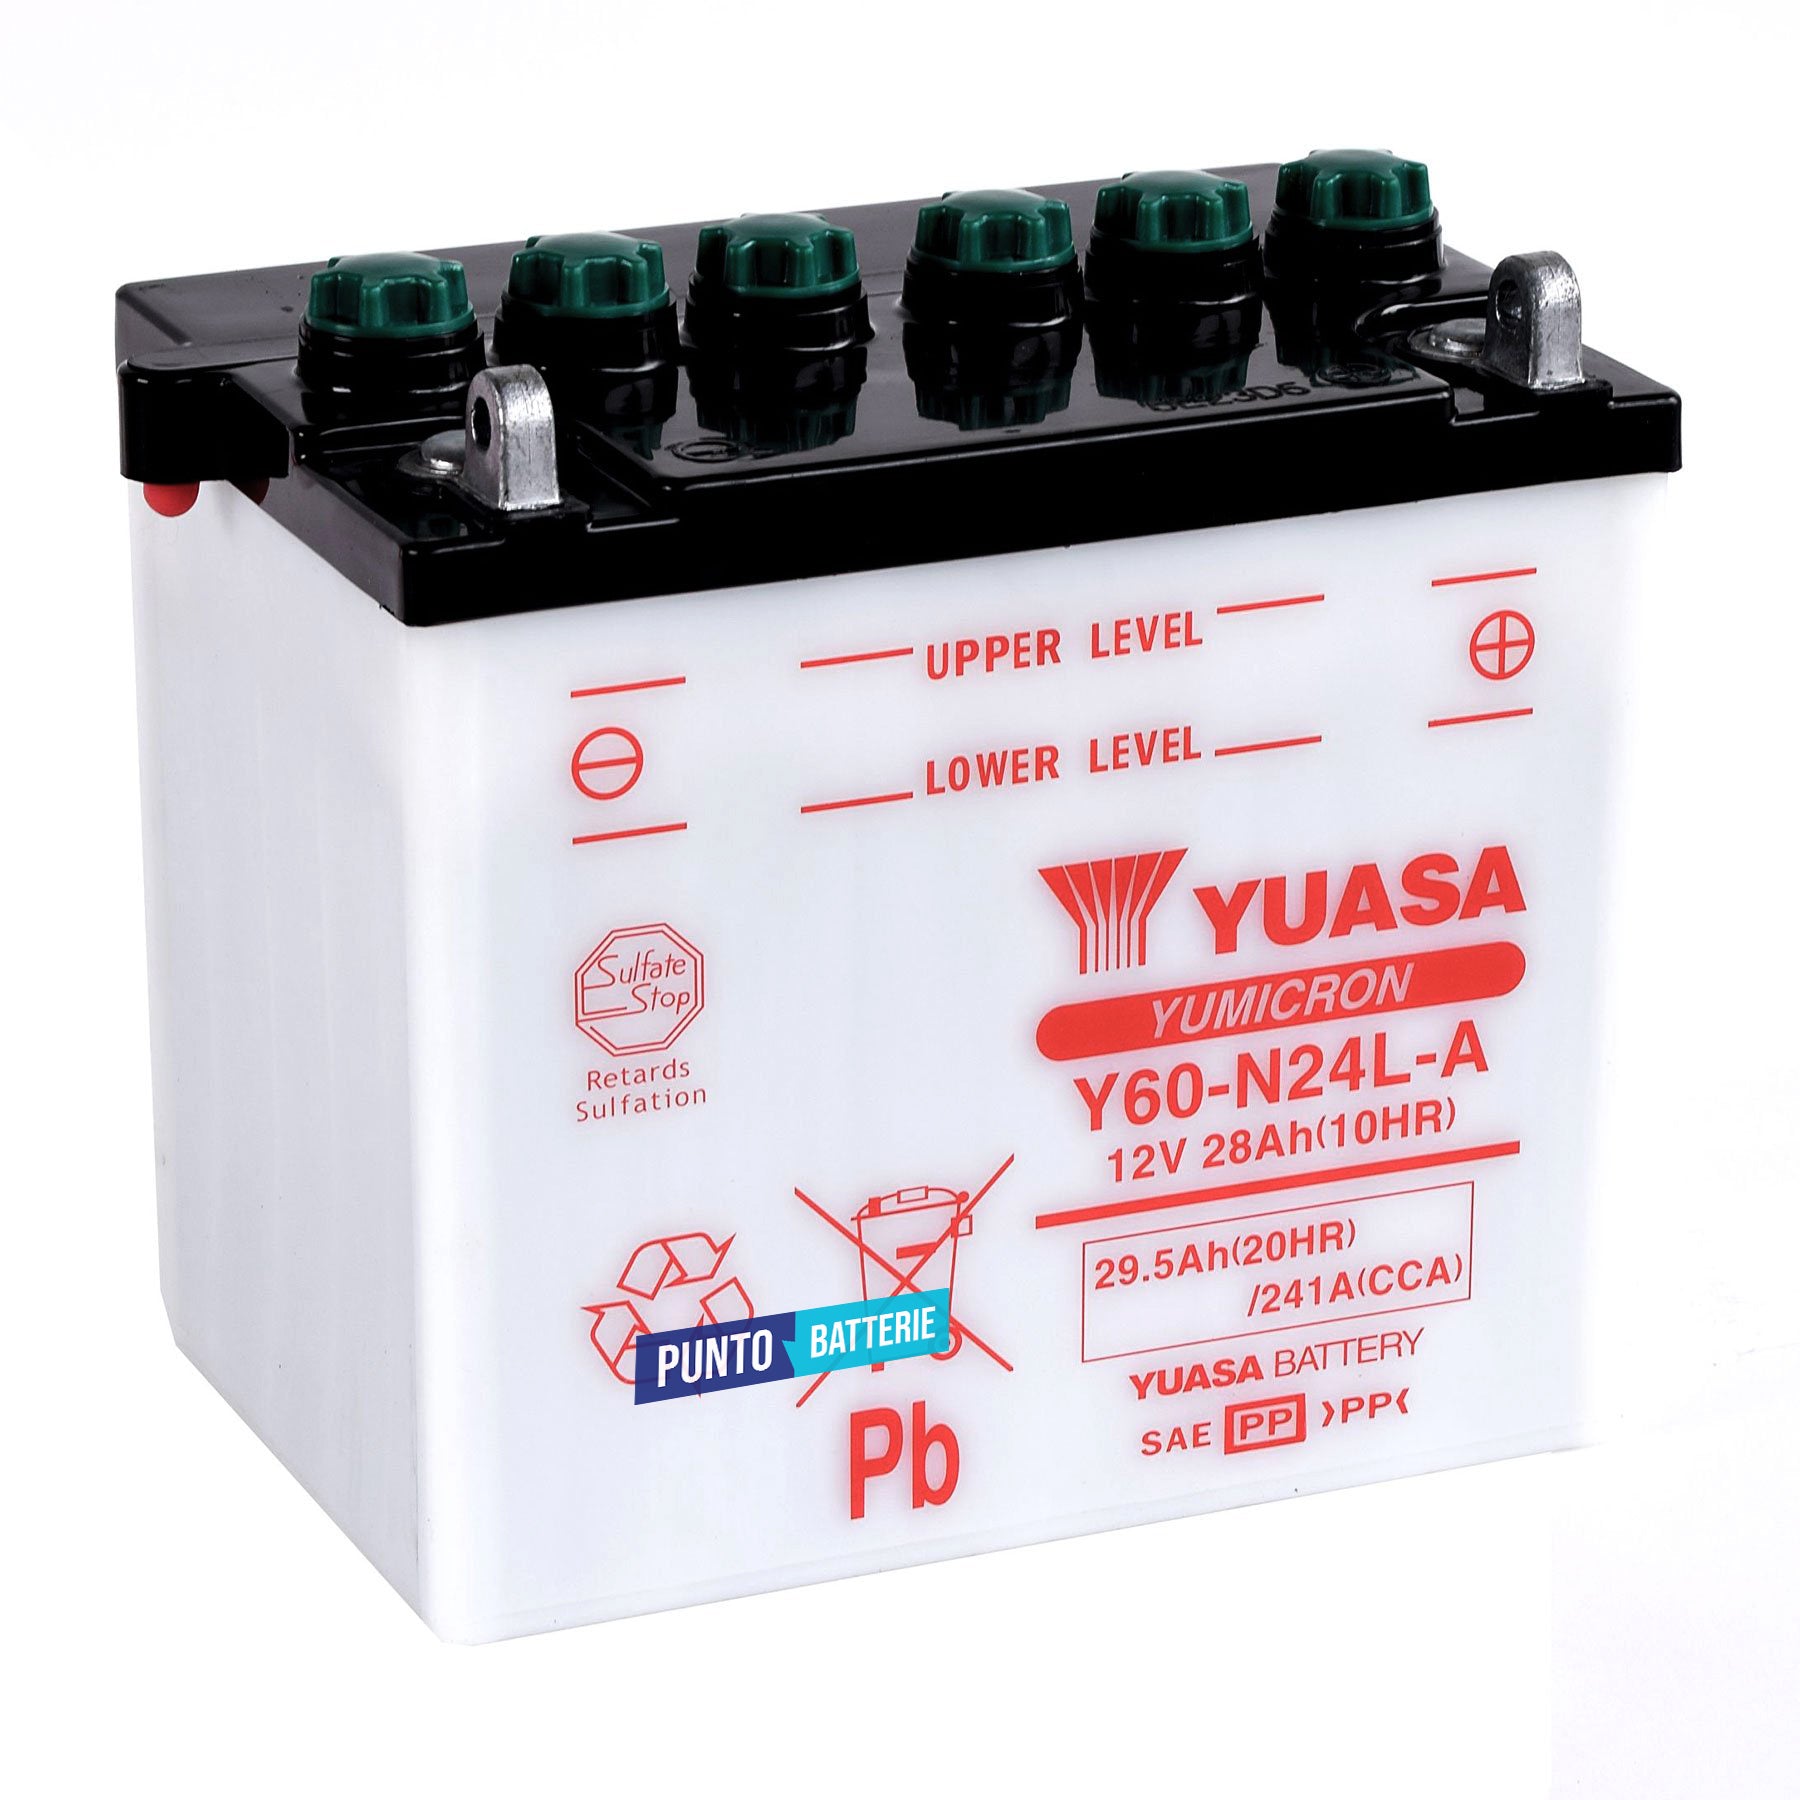 Batteria originale Yuasa YuMicron Y60-N24L-A, dimensioni 184 x 124 x 175, polo positivo a destra, 12 volt, 28 amperora, 241 ampere. Batteria per moto, scooter e powersport.